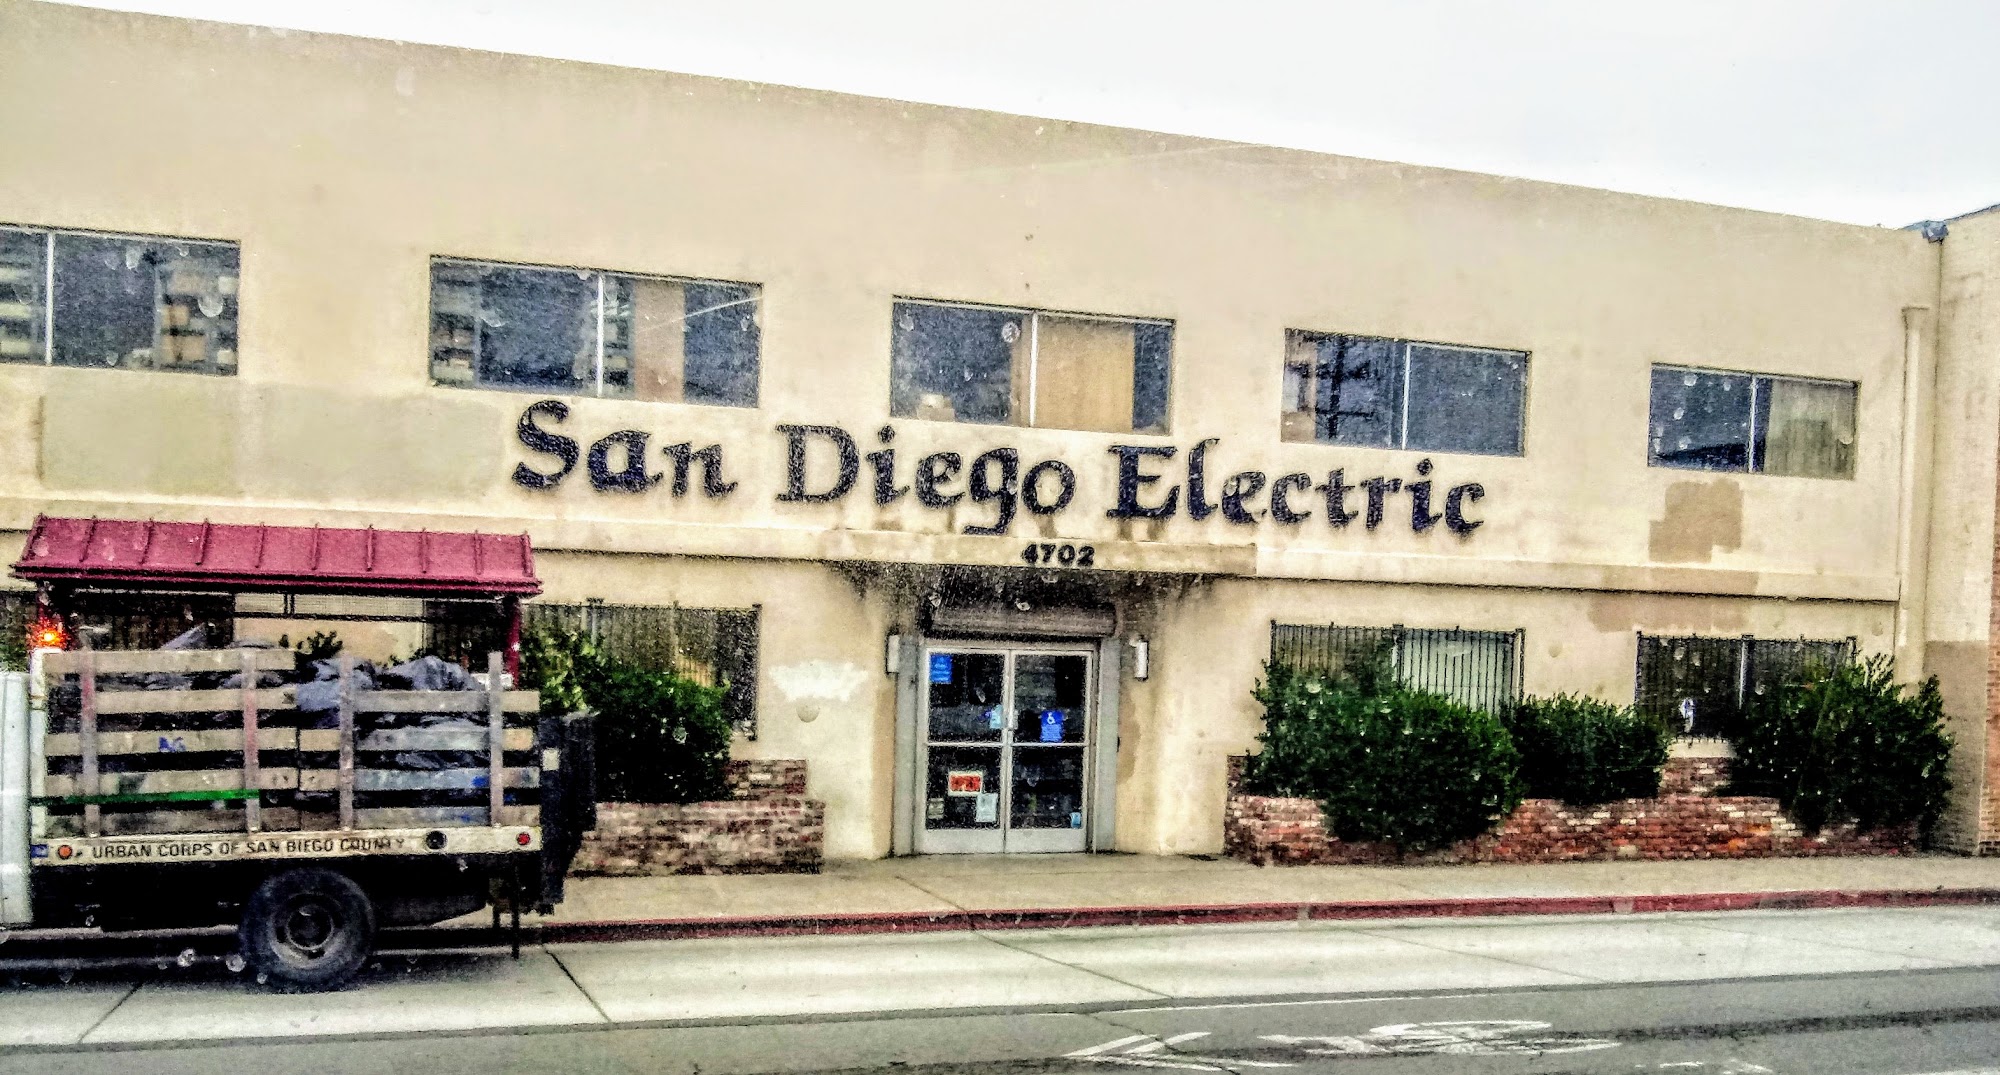 San Diego Electric Inc